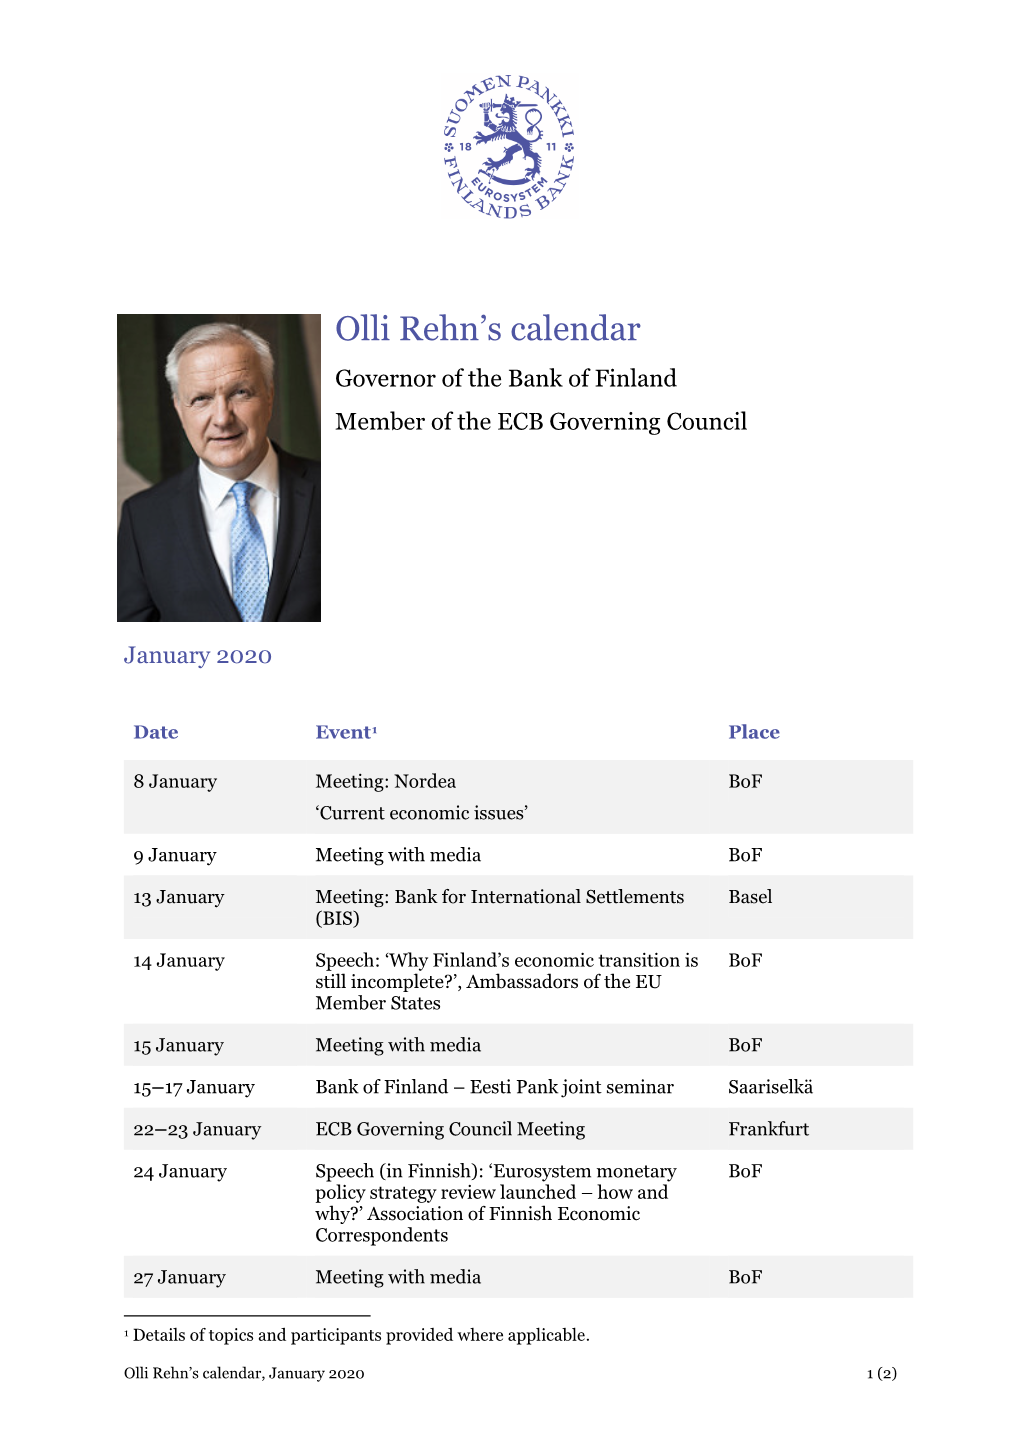 Olli Rehn's Calendar